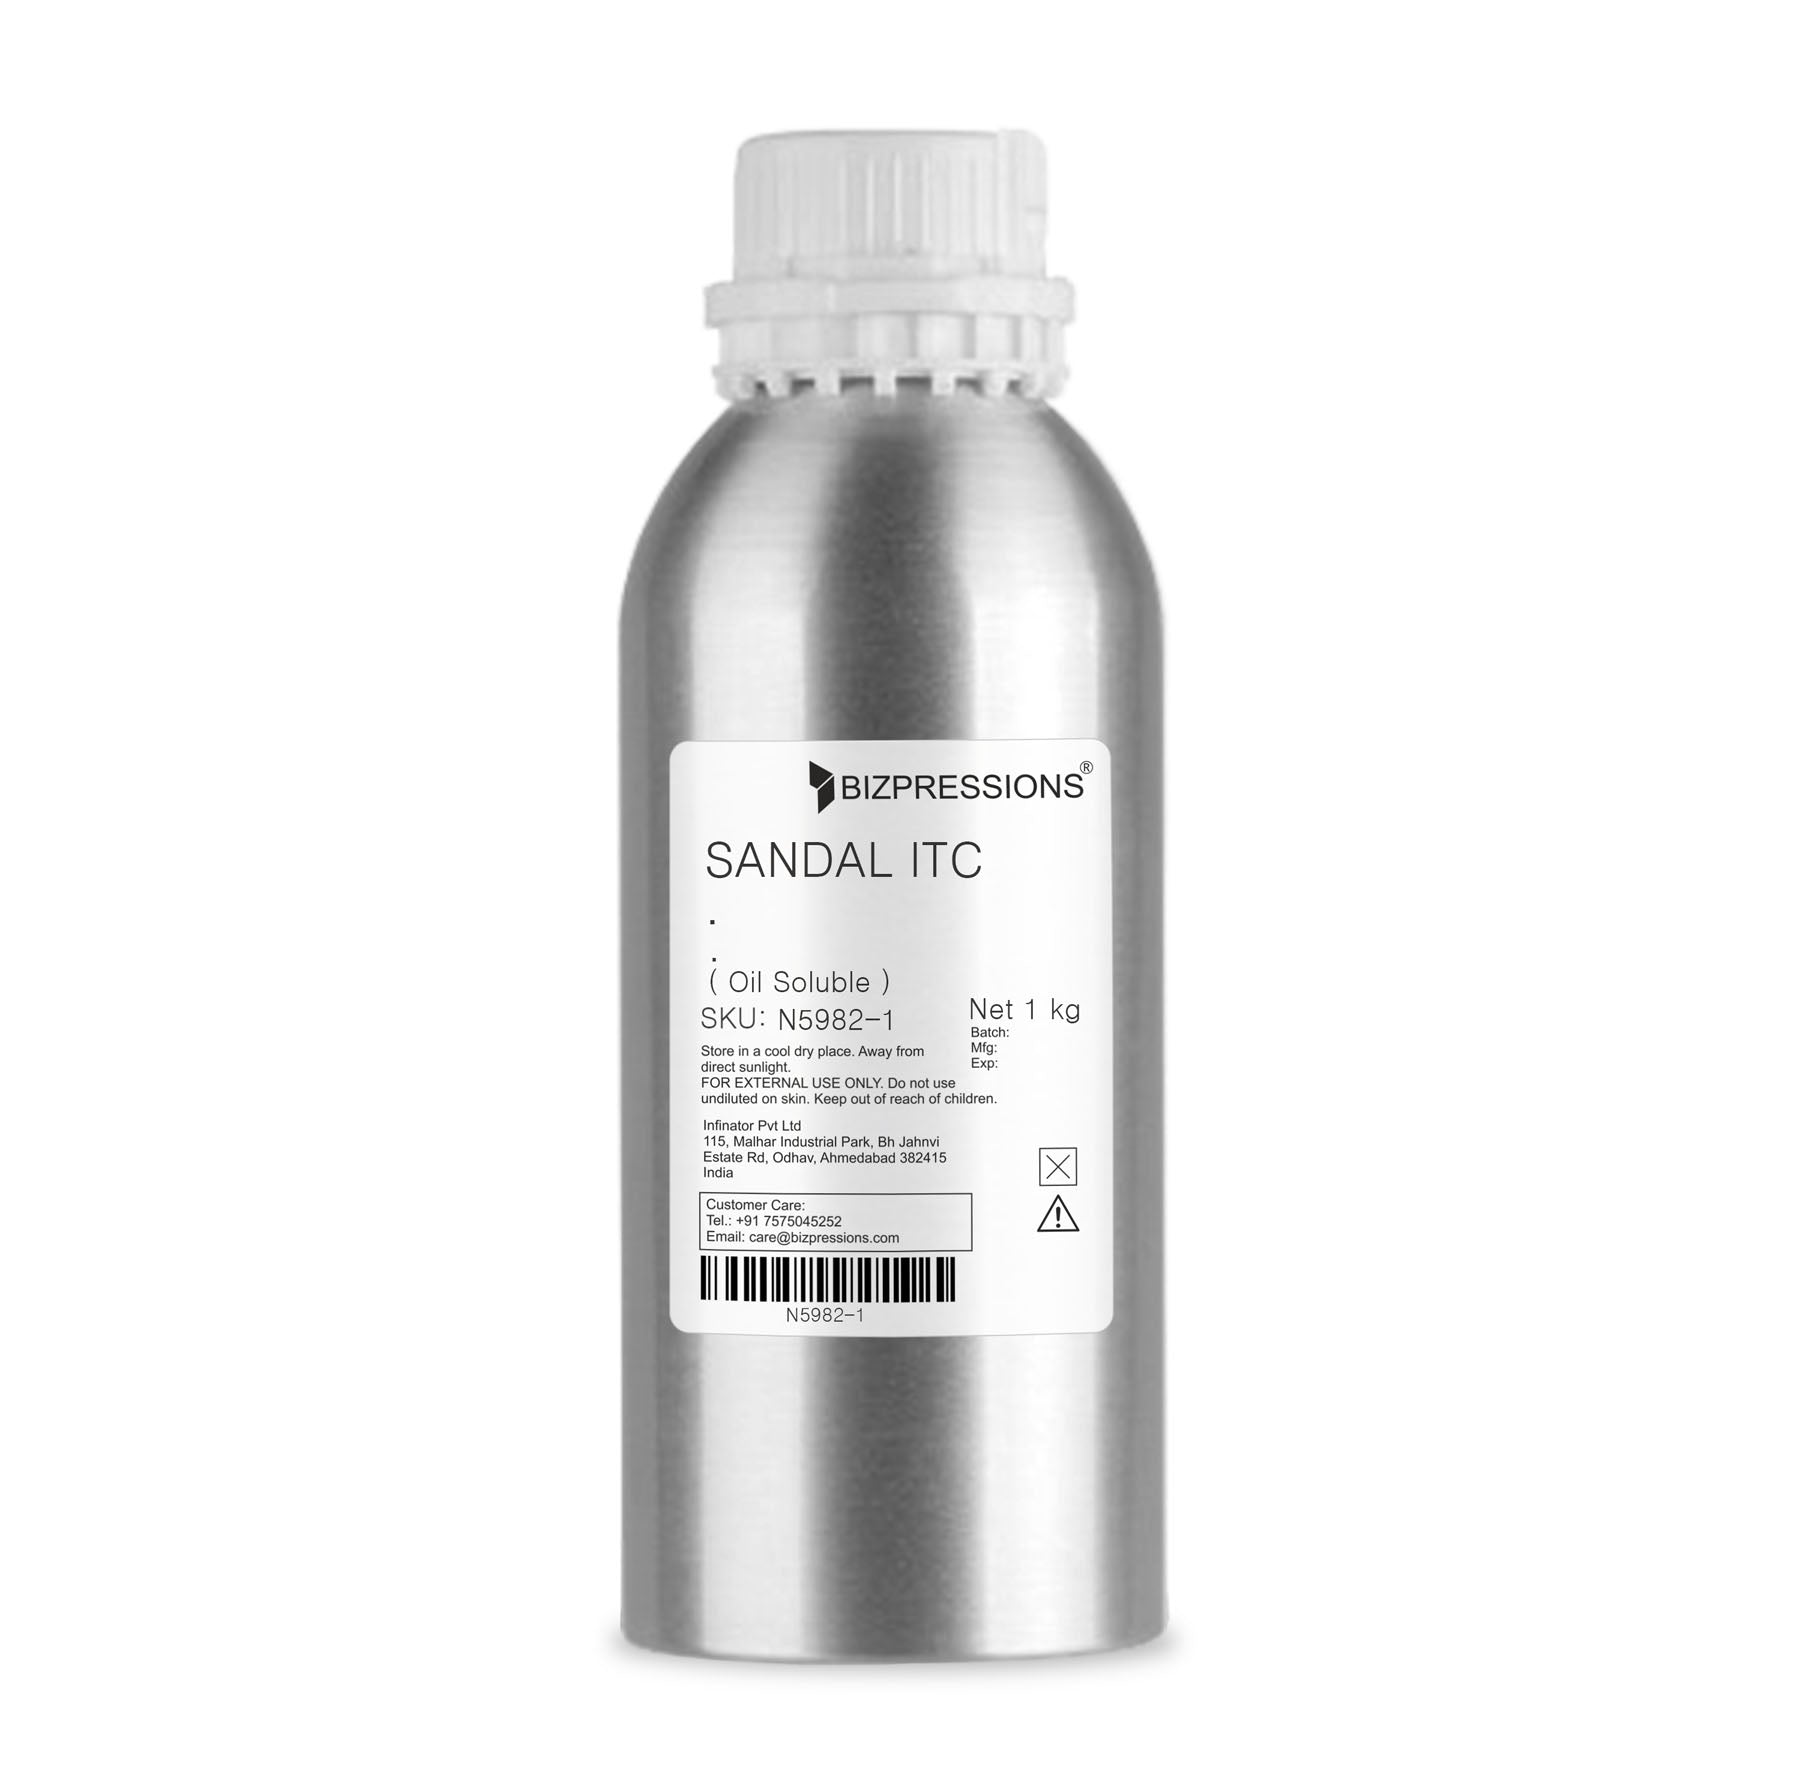 SANDAL ITC - Fragrance ( Oil Soluble ) - 1 kg